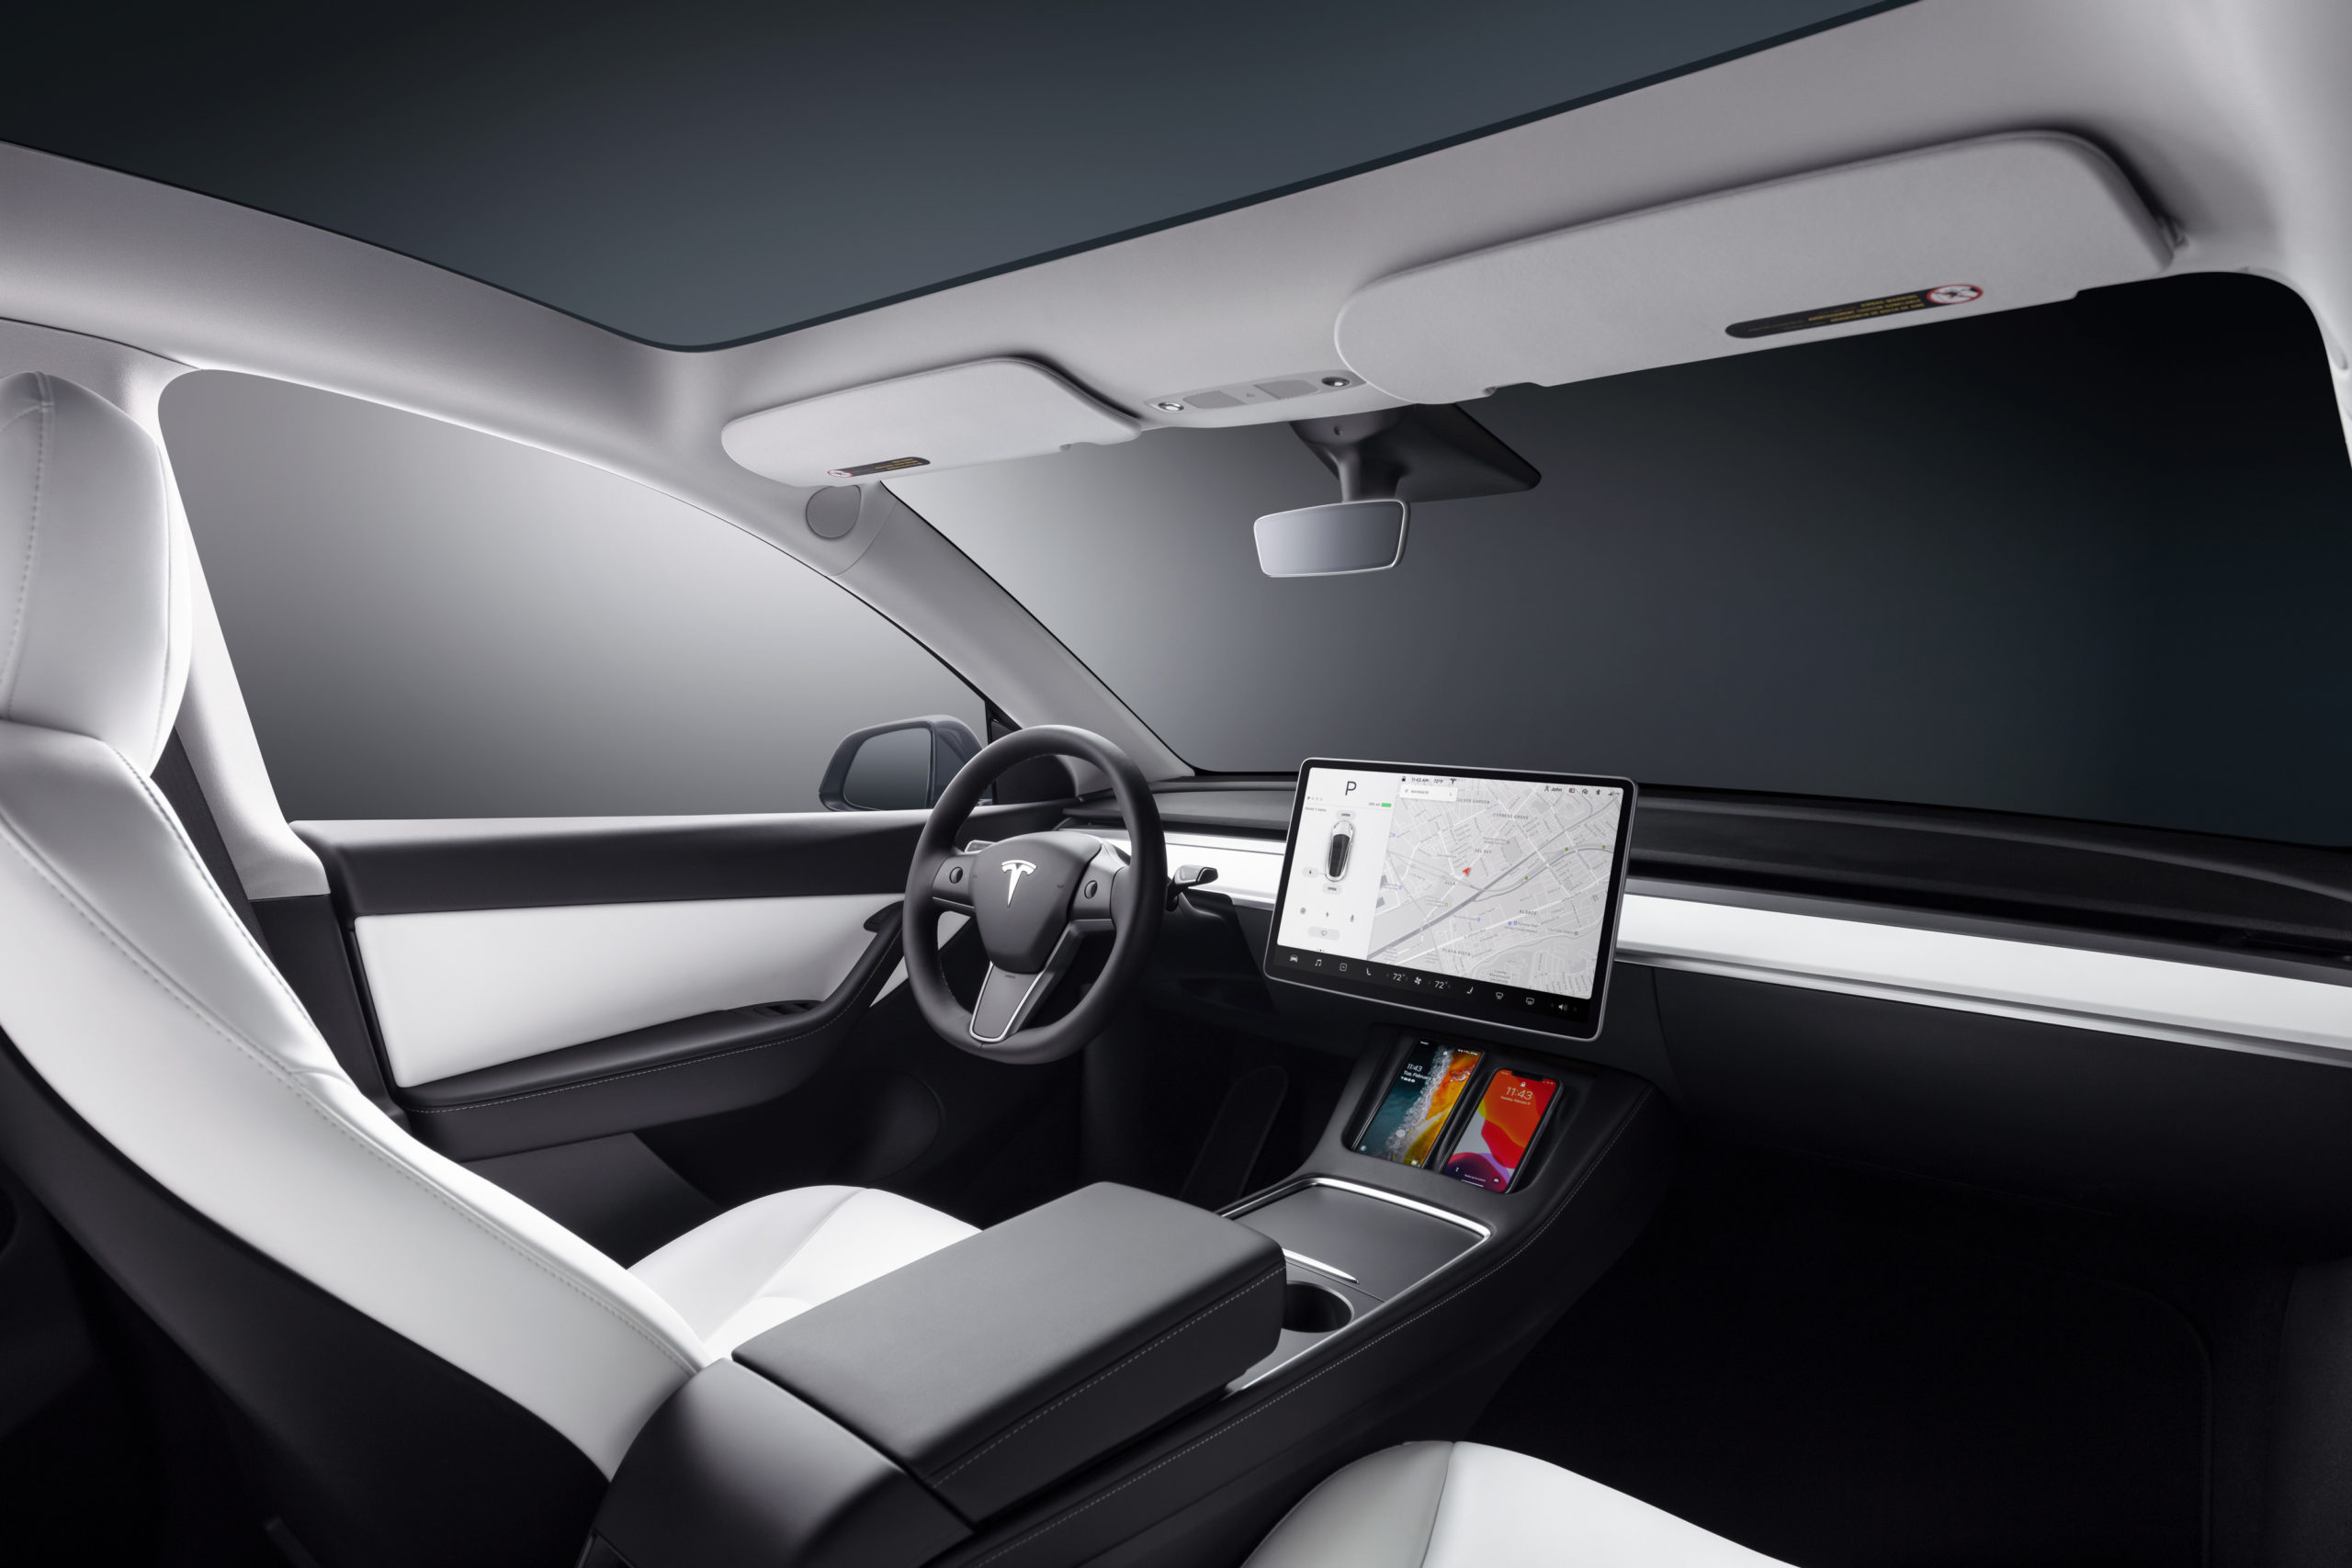 Tesla delivers 20% more cars despite chip shortages